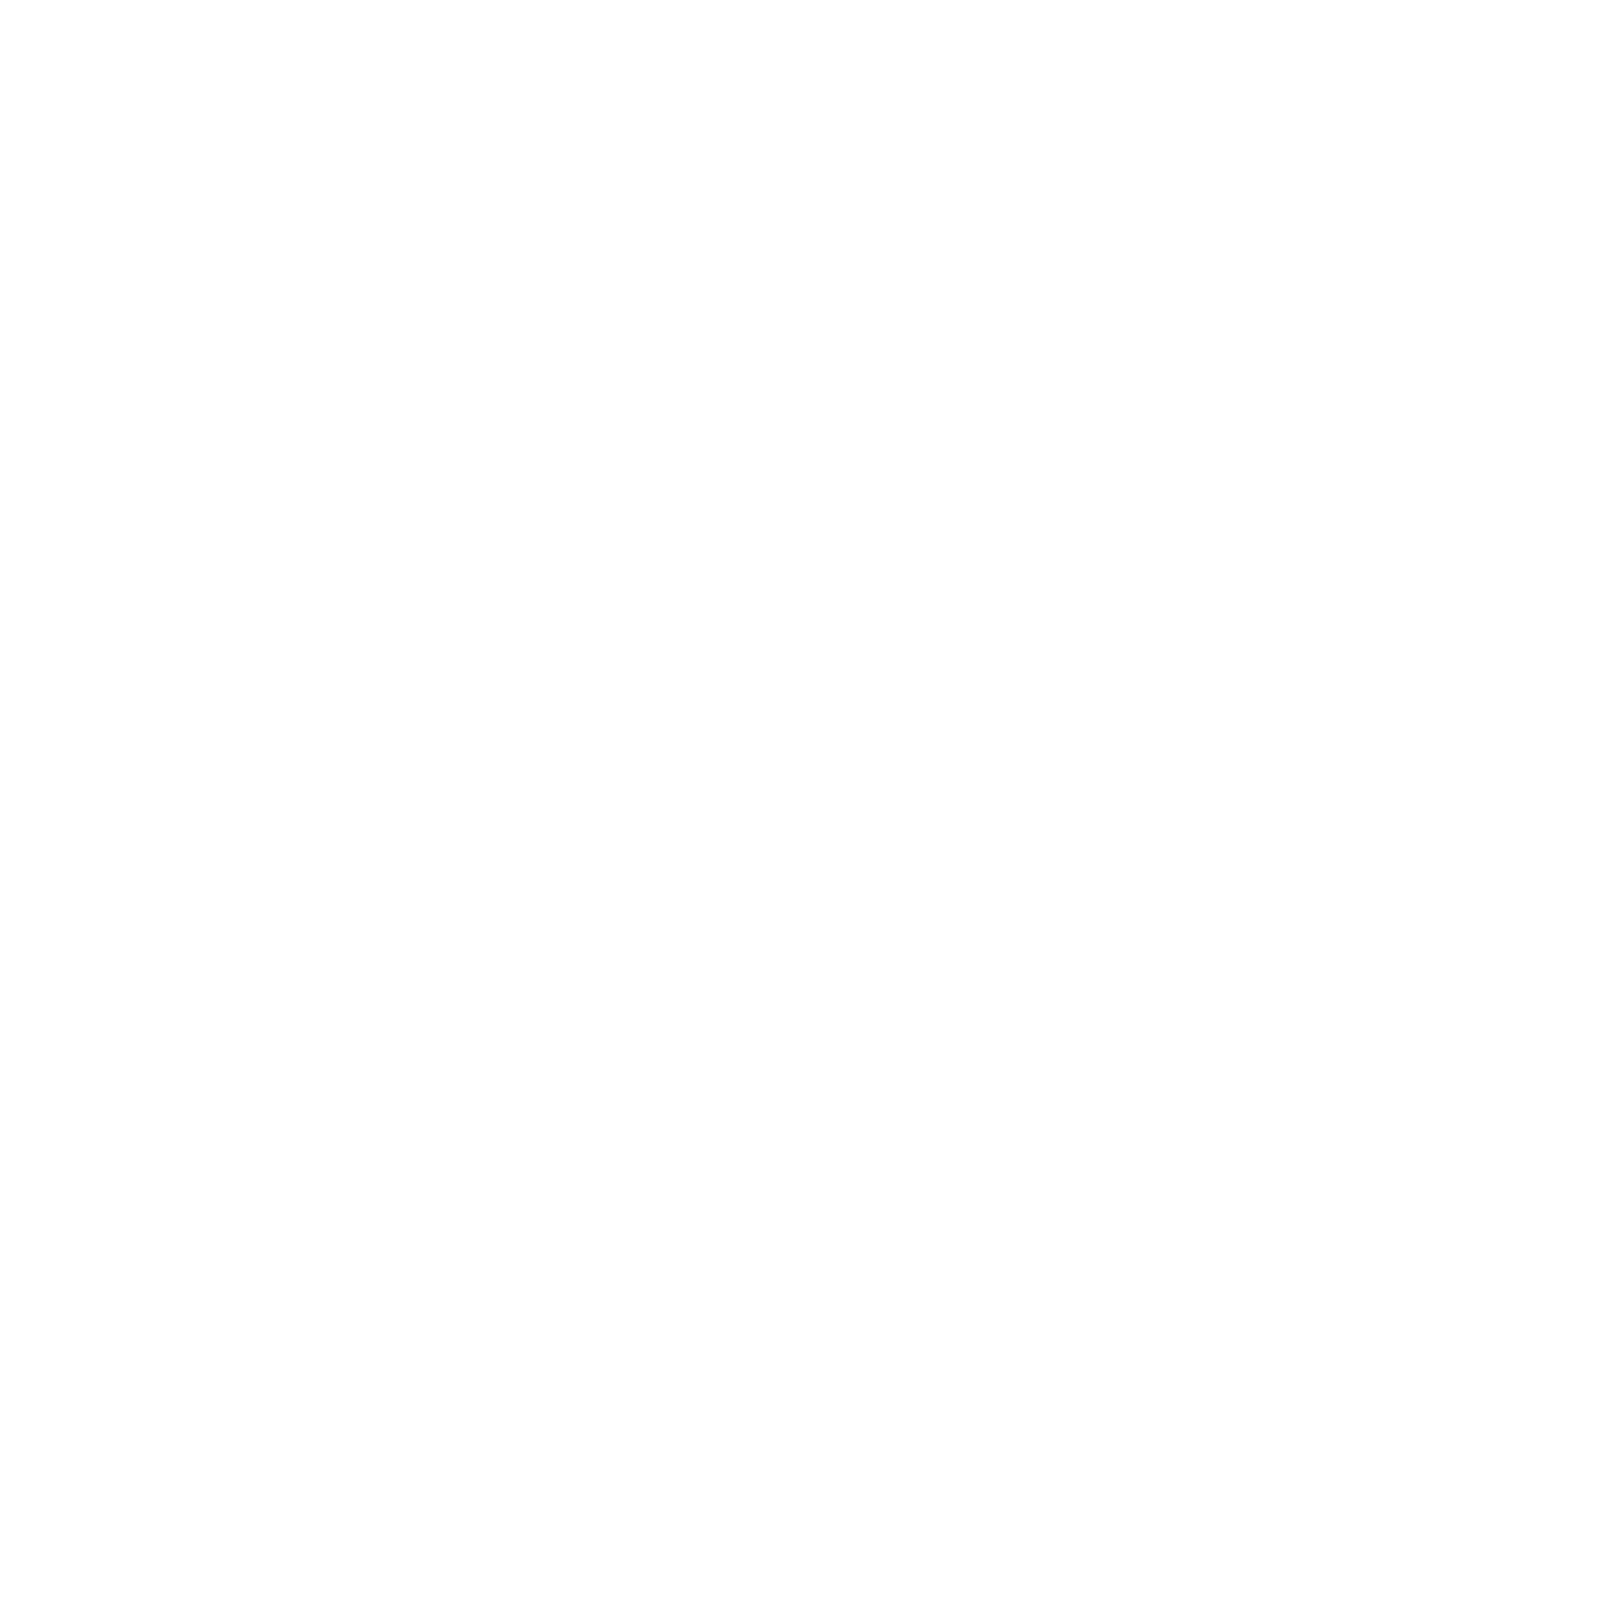 renewableEnergyAndEnvironmentalStudies